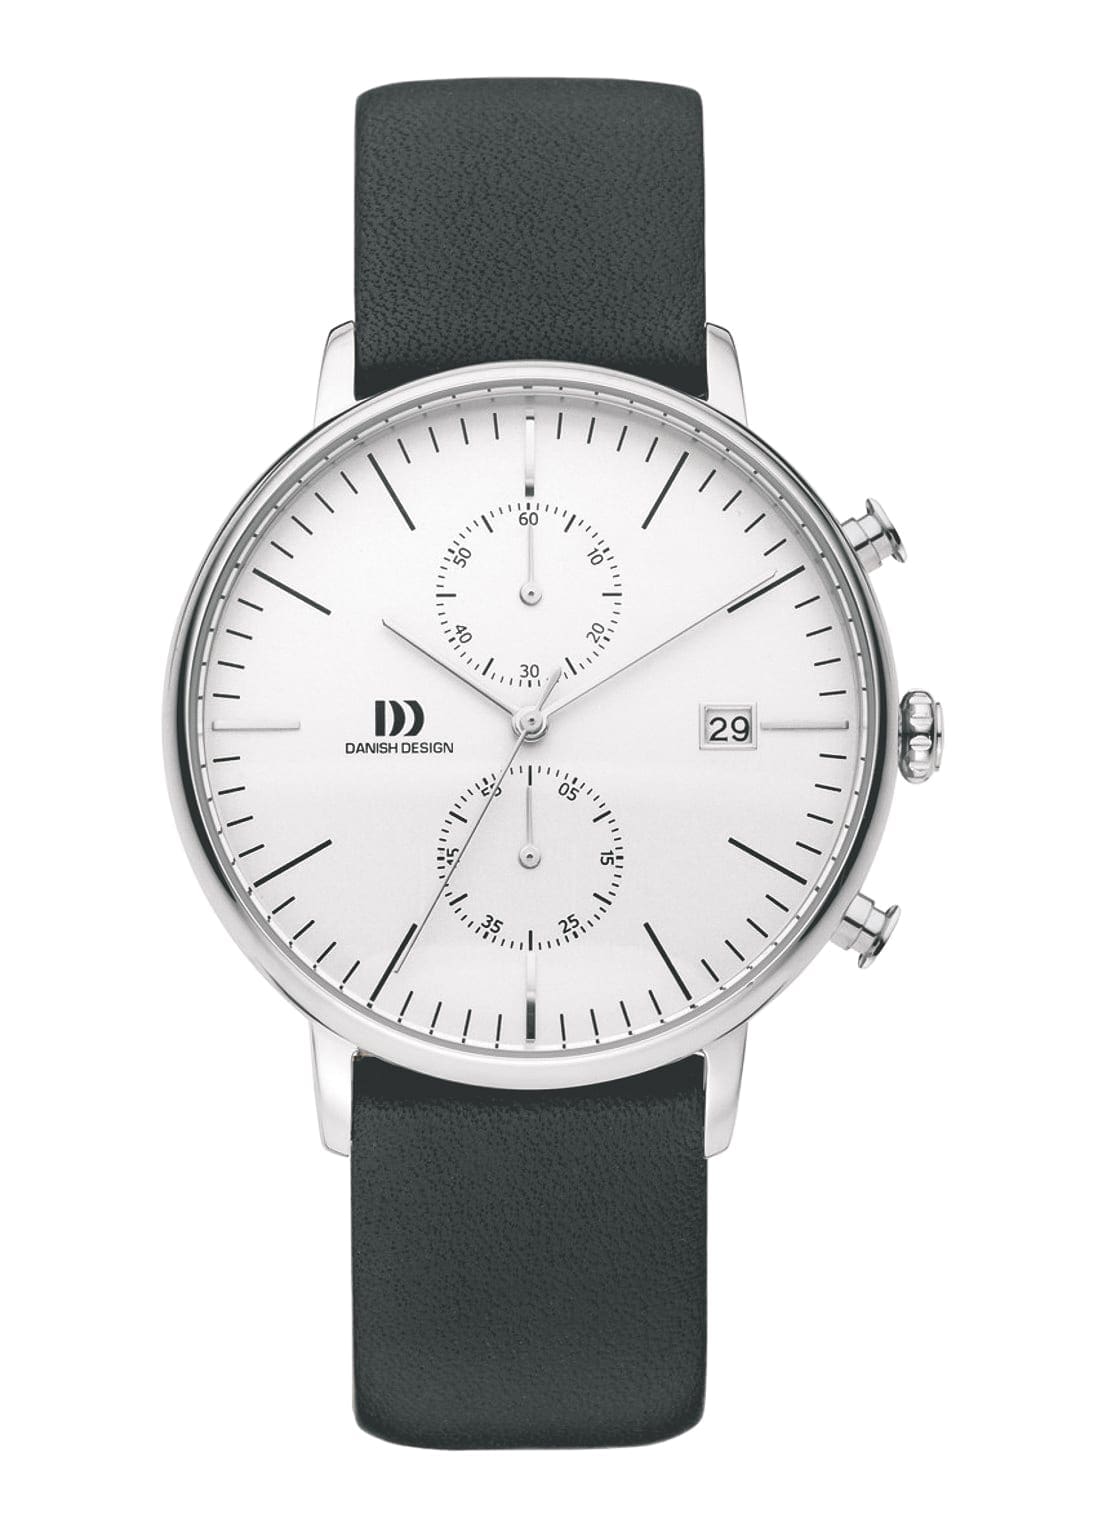 horloges onder €250, 5 stijlvolle horloges onder de €250